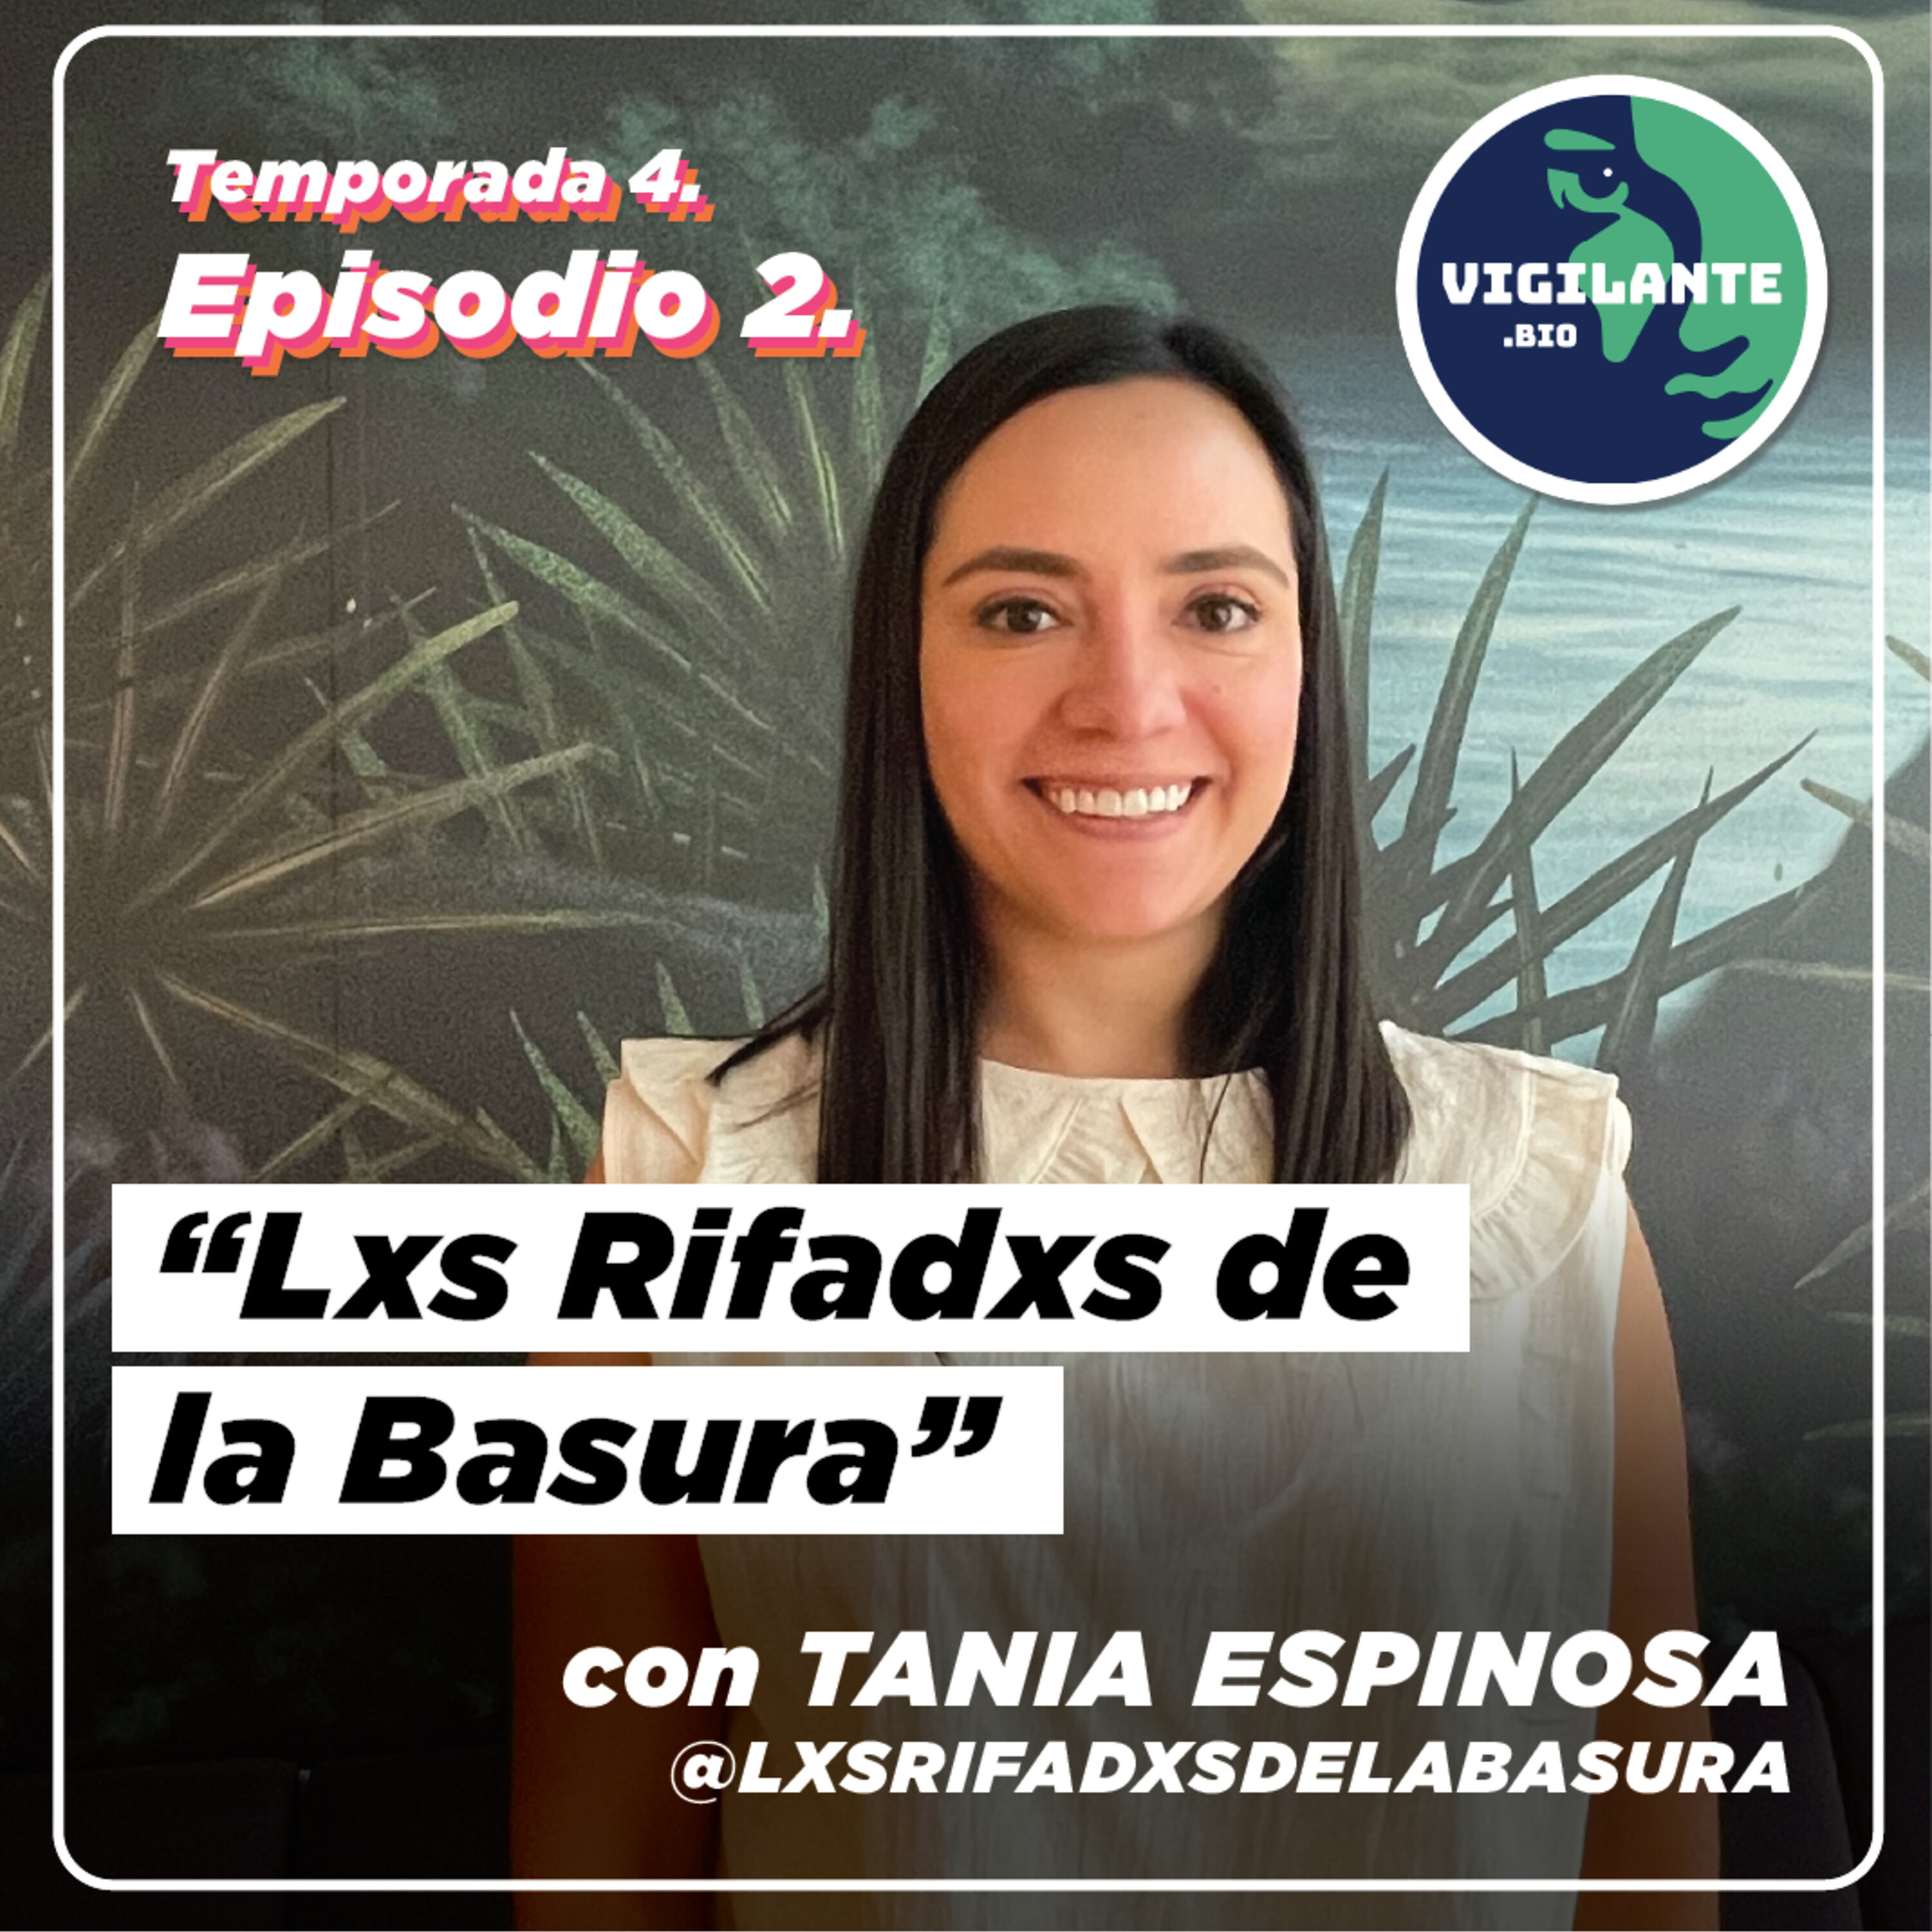 S4E2: Lxs Rifadxs de la Basura con Tania Espinosa